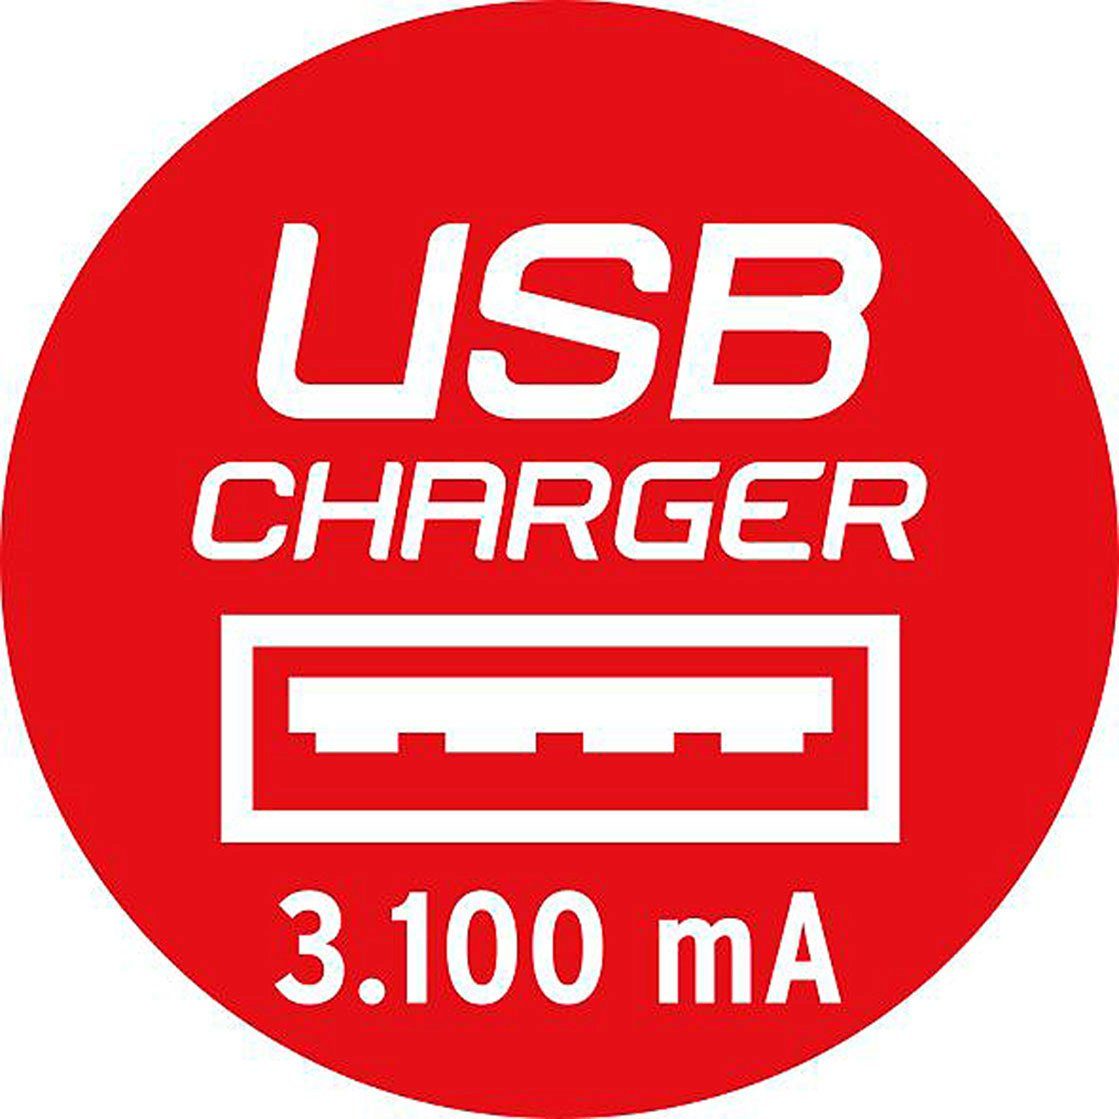 2x USB estilo 4x Brennenstuhl Schutzkontakt-Steckdosen, Steckdosenleiste, Euro-Steckdosen, 2x